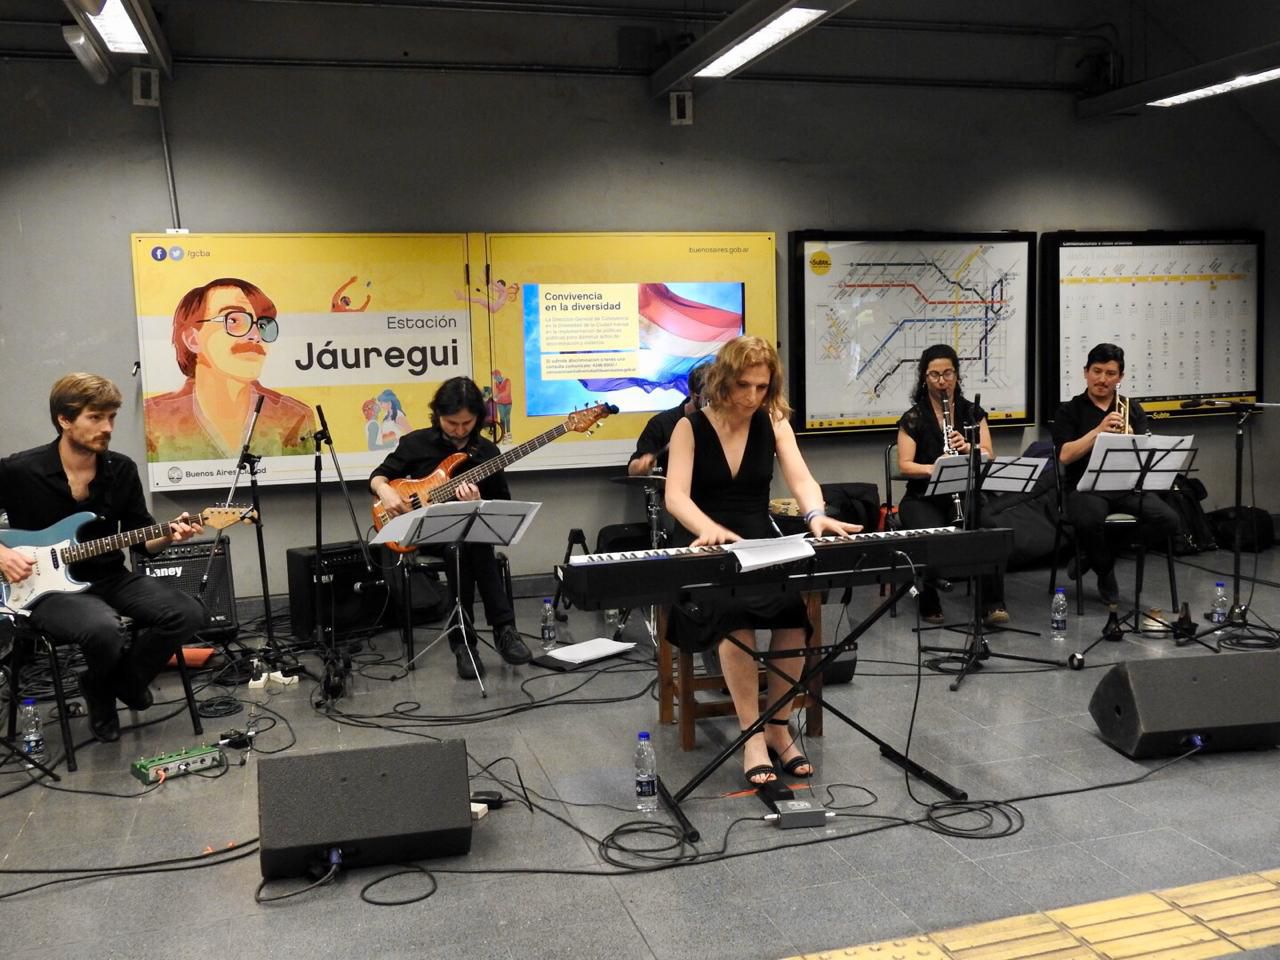 El martes 3 de diciembre, la compositora, pianista y música académica, Calenna Garba, referente en Derechos Humanos, brindó un concierto en la Estación de la Línea H Carlos Jáuregui